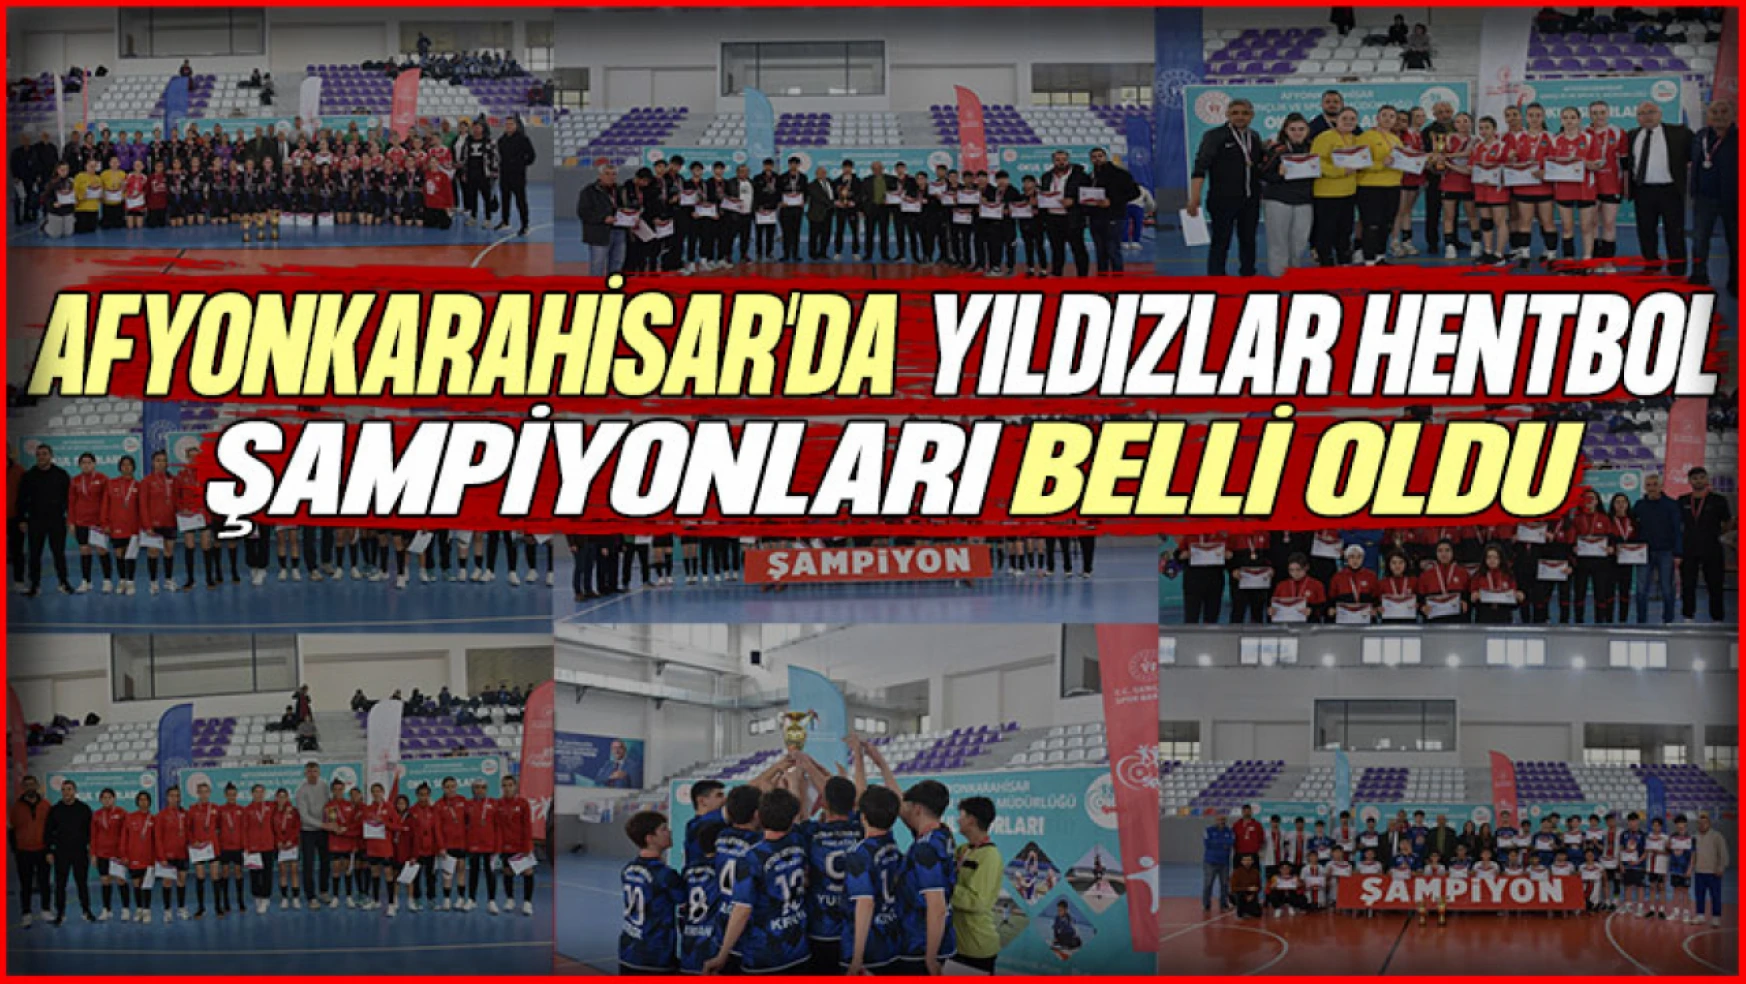 Okul Sporları Yıldızlar Hentbol Türkiye Birinciliği Afyonkarahisar'da Yapıldı